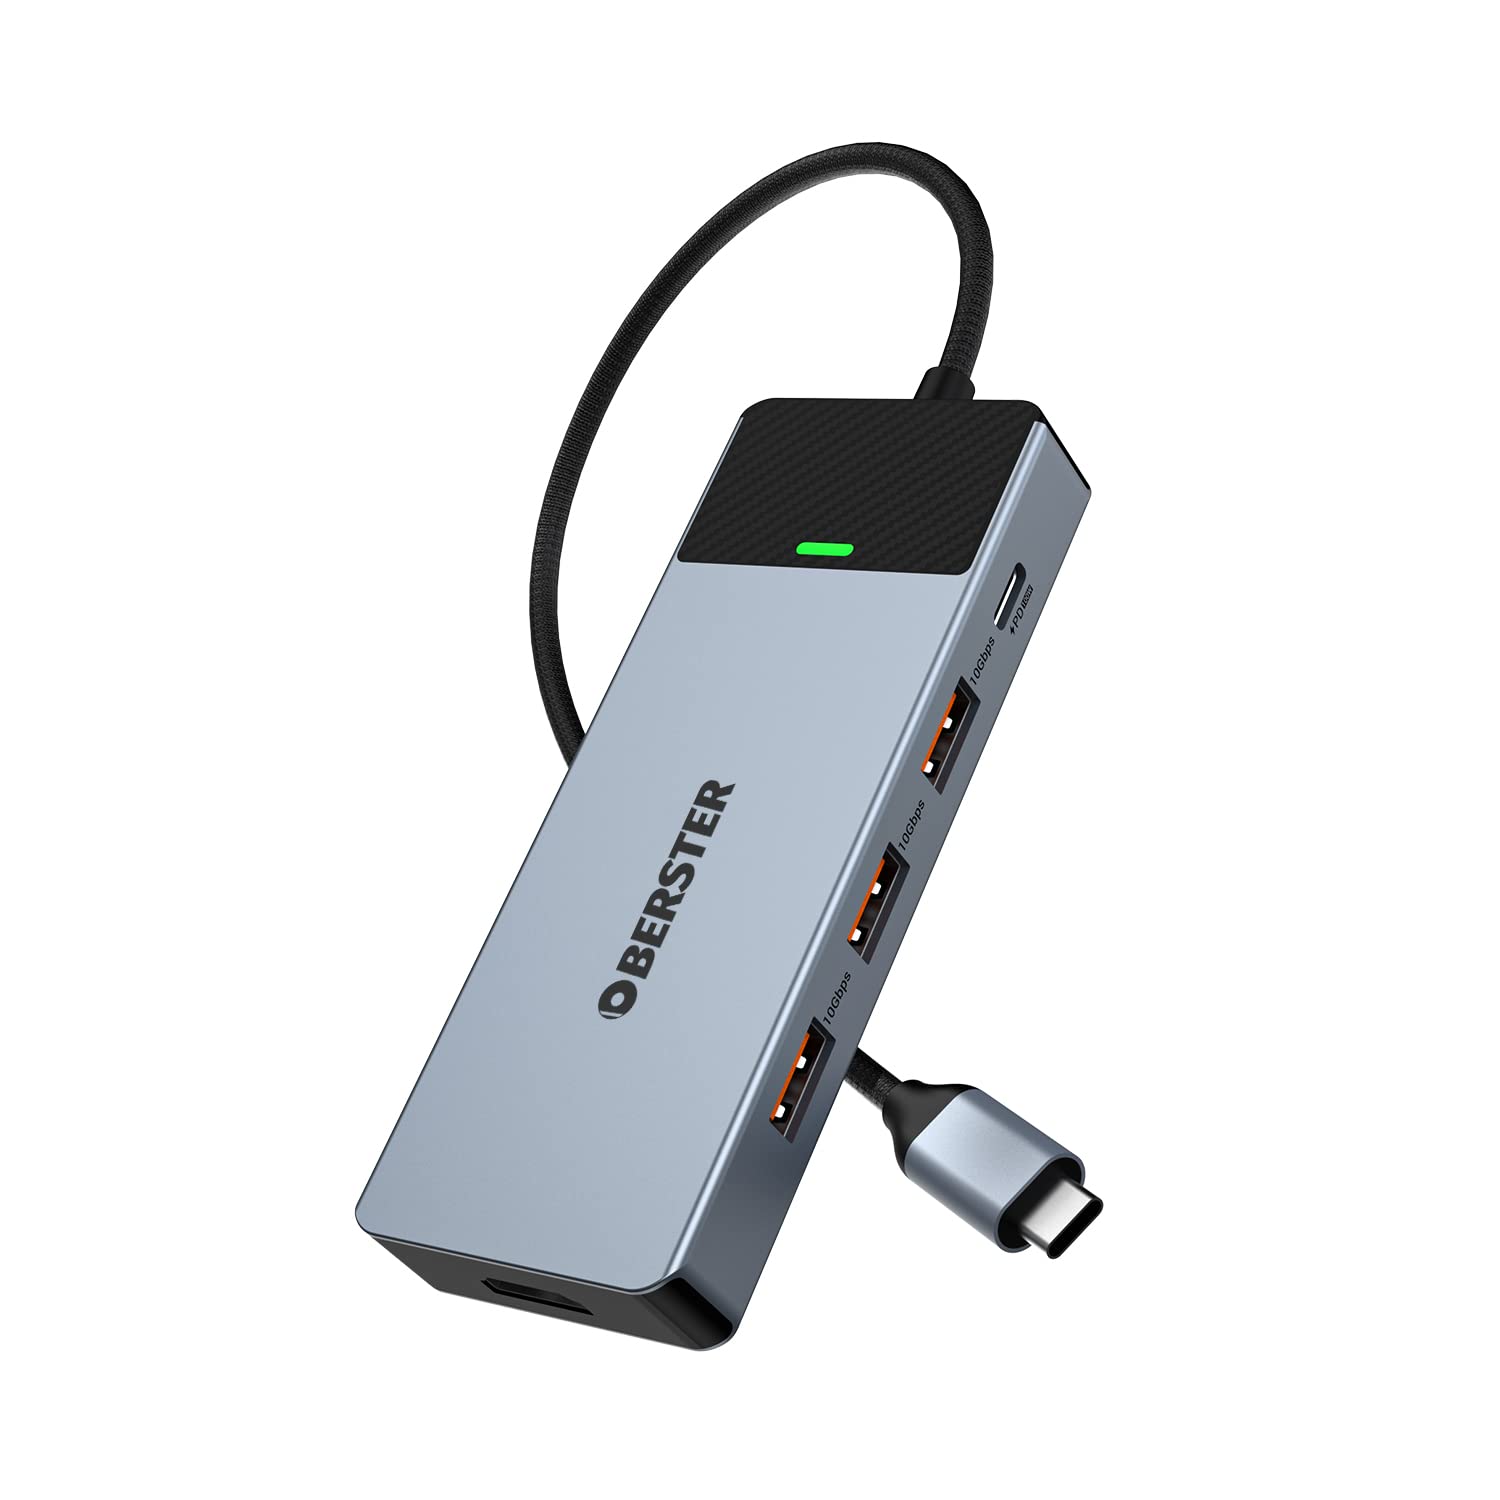 USB C 3.2 Hub with HDMI 4K@60Hz, OBERSTER USB C Adapter (USB A/C 3.2 10Gbps, 100W PD), Adaptador USB C 3.2 Ultra Delgado Compatible for MacBook Air/Pro, iMac, iPad Pro